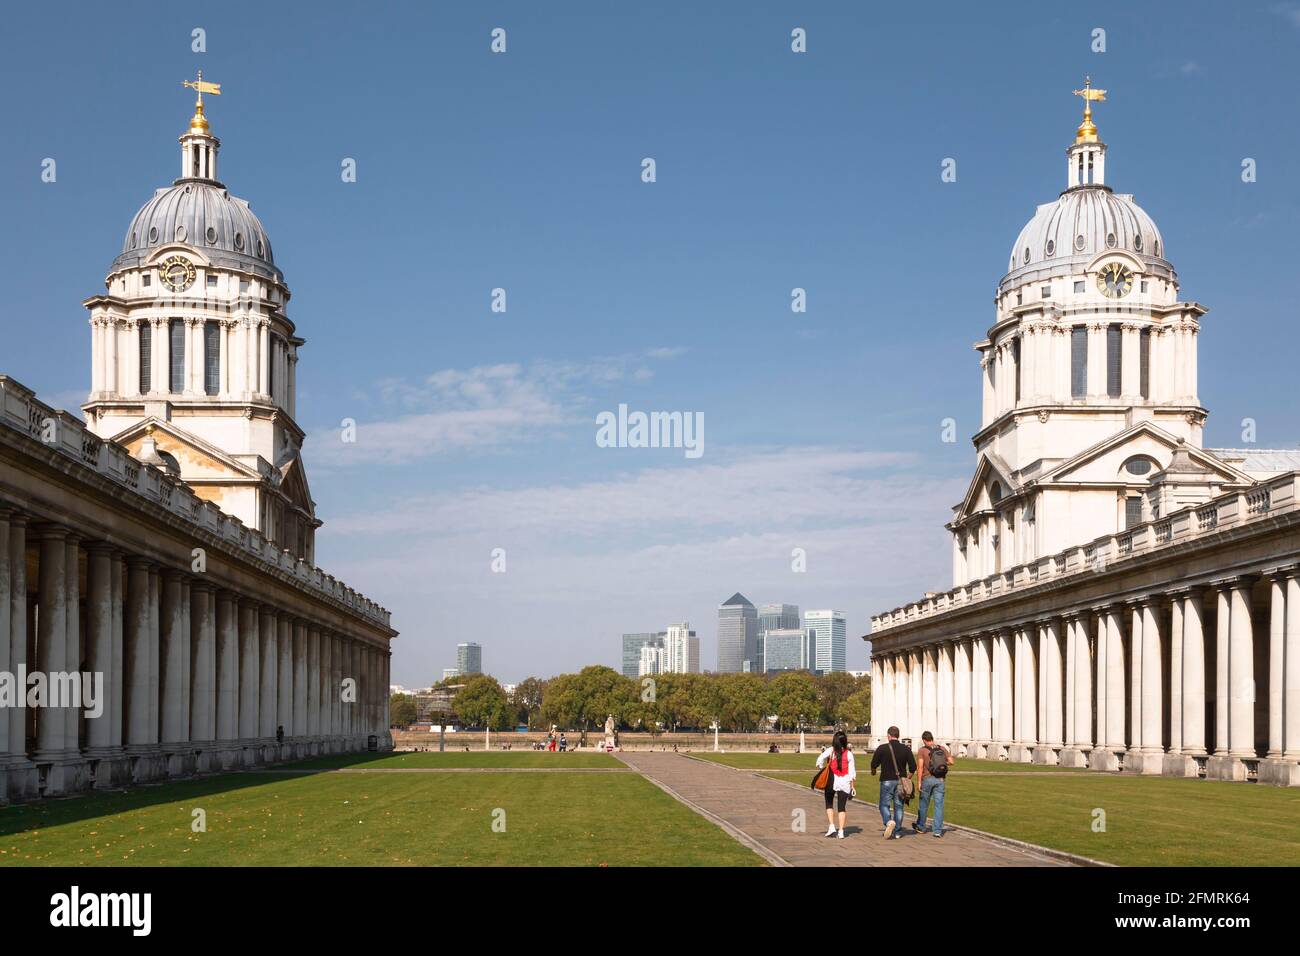 LONDRES, Royaume-Uni - 03 octobre 2011. Deux dômes du Old Royal Naval College, Musée maritime national, Greenwich. Canary Wharf peut être vu à l'horizon Banque D'Images